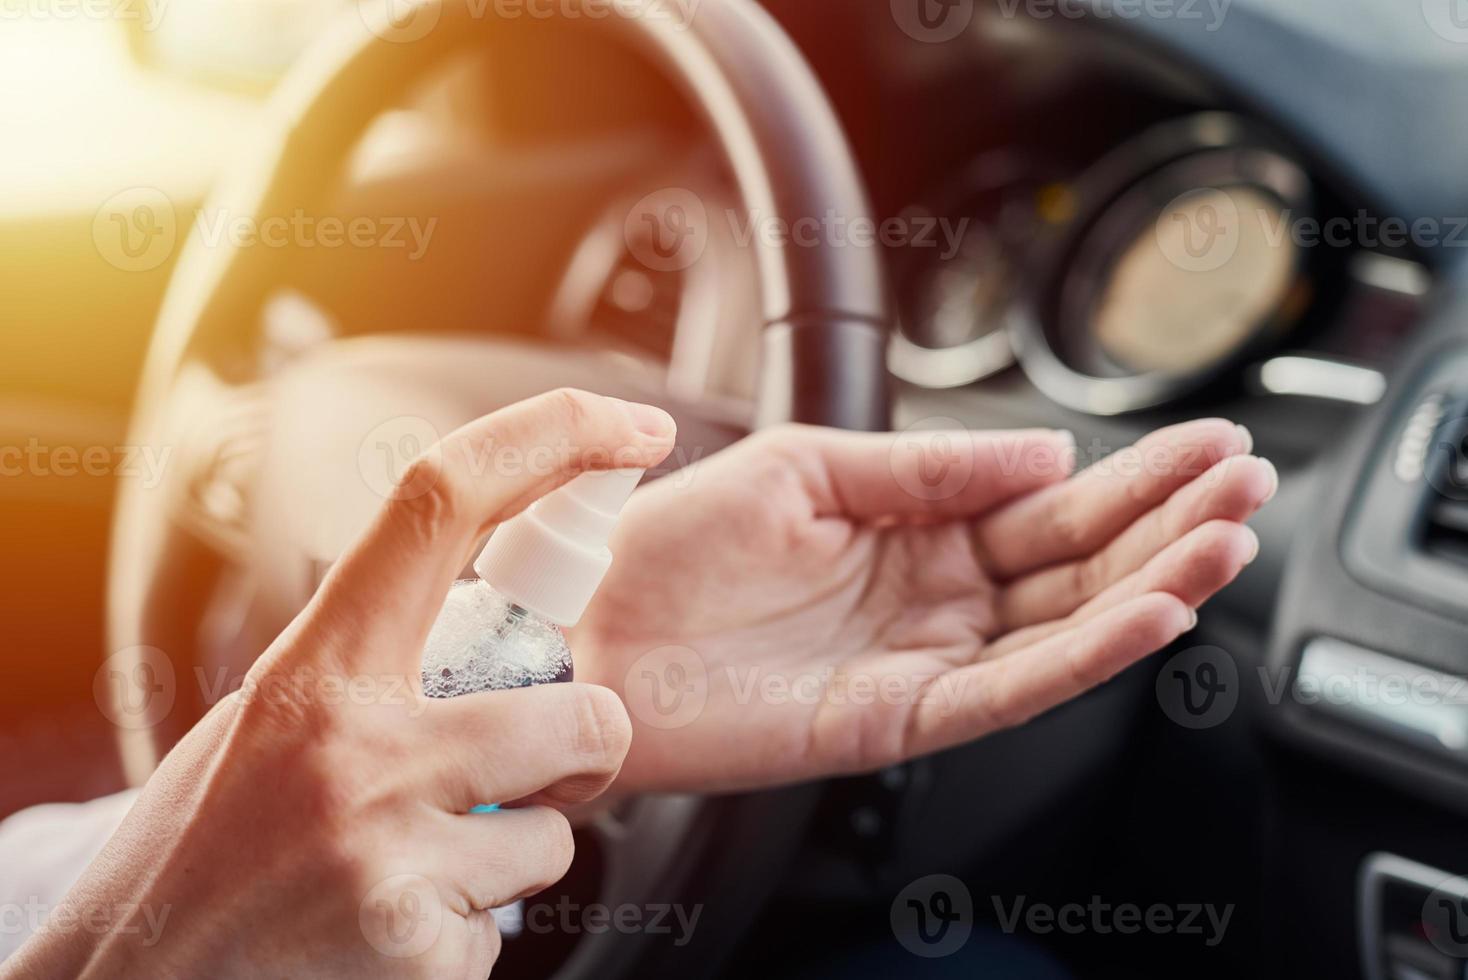 desinfección de manos del conductor con desinfectante antibacteriano en el camión antes de conducir foto